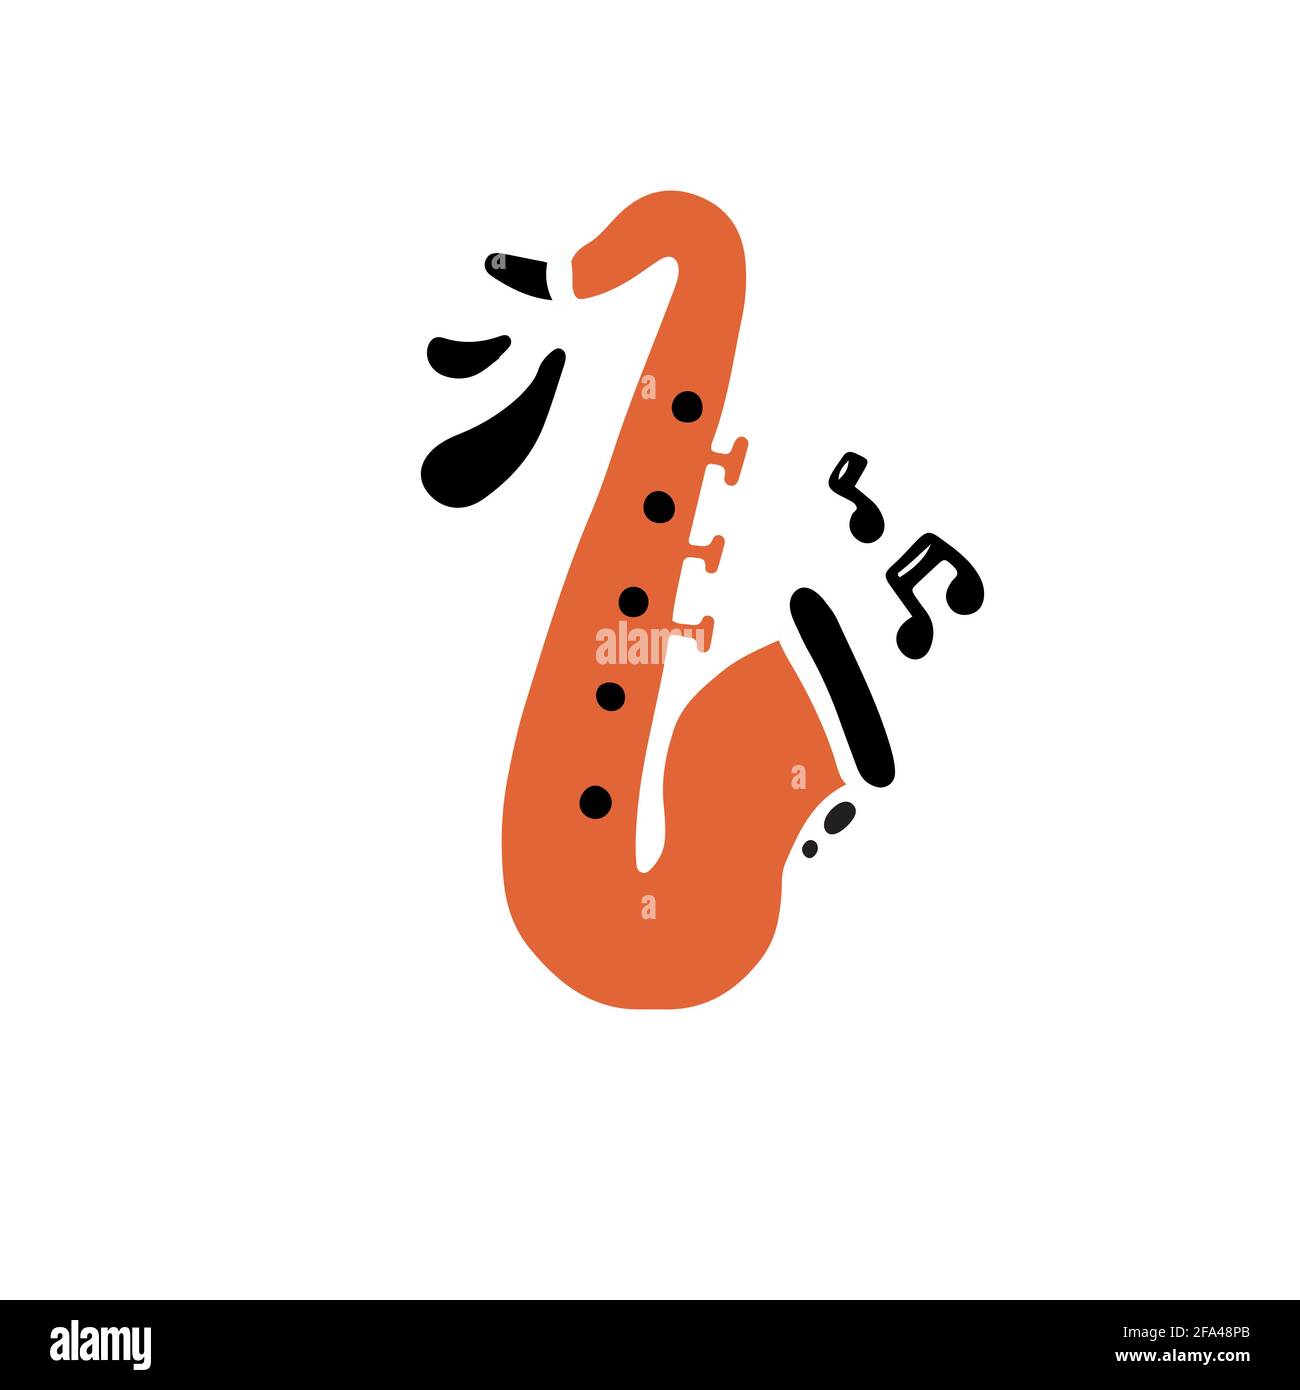 Disegno minimalista a mano piatto stile vettoriale illustrazione di ottone tradizionale strumento di vivace colore arancione chiamato sassofono che suona forte creativo musica raffigurata con note nere Illustrazione Vettoriale